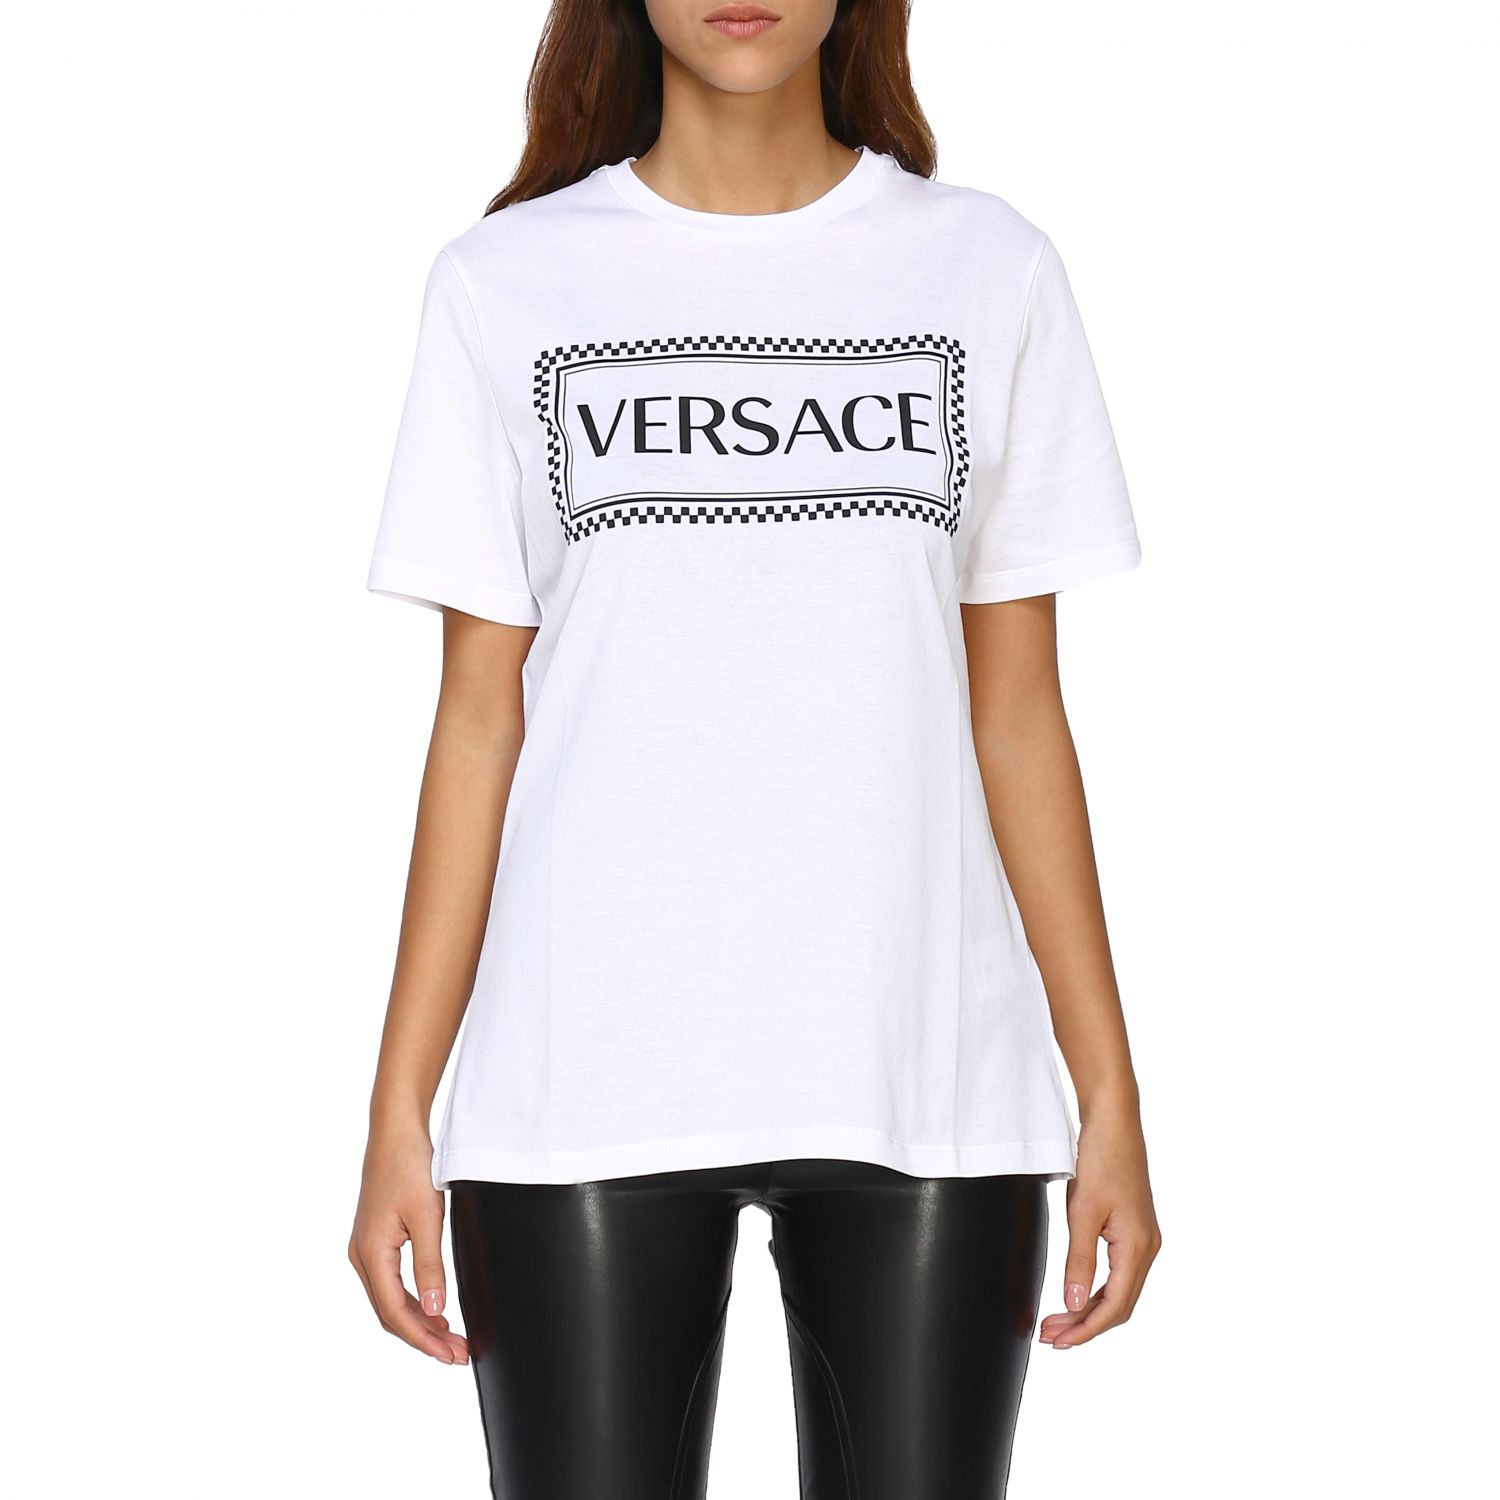 versace t shirt womens